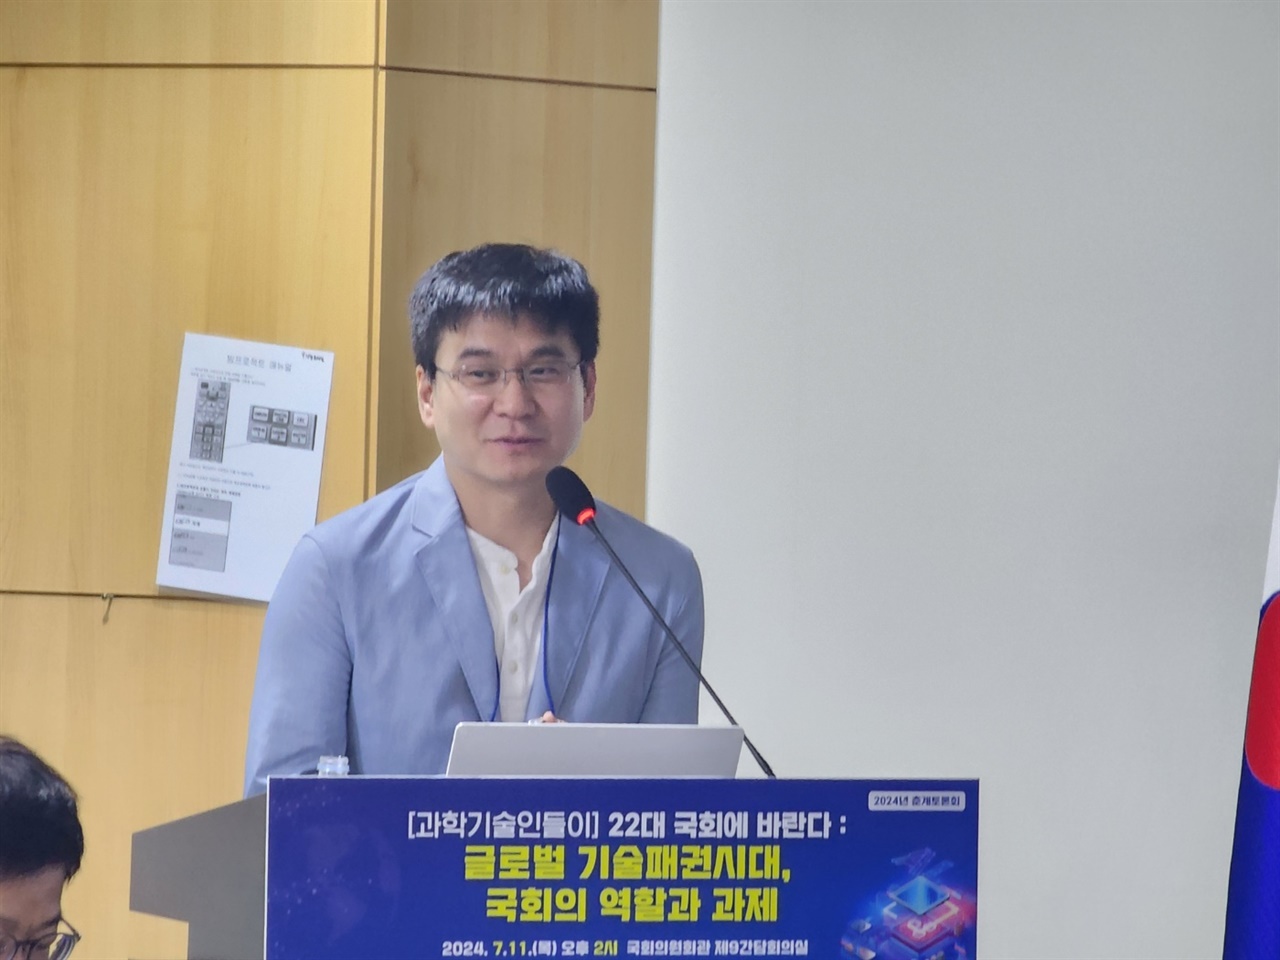  국회의원회관에서 열린 정책토론회에서 김승일 과실연 AI미래포럼 의장단 대표가 'AI 패권경쟁과 우리의 과제'라는 주제발표를 했다.